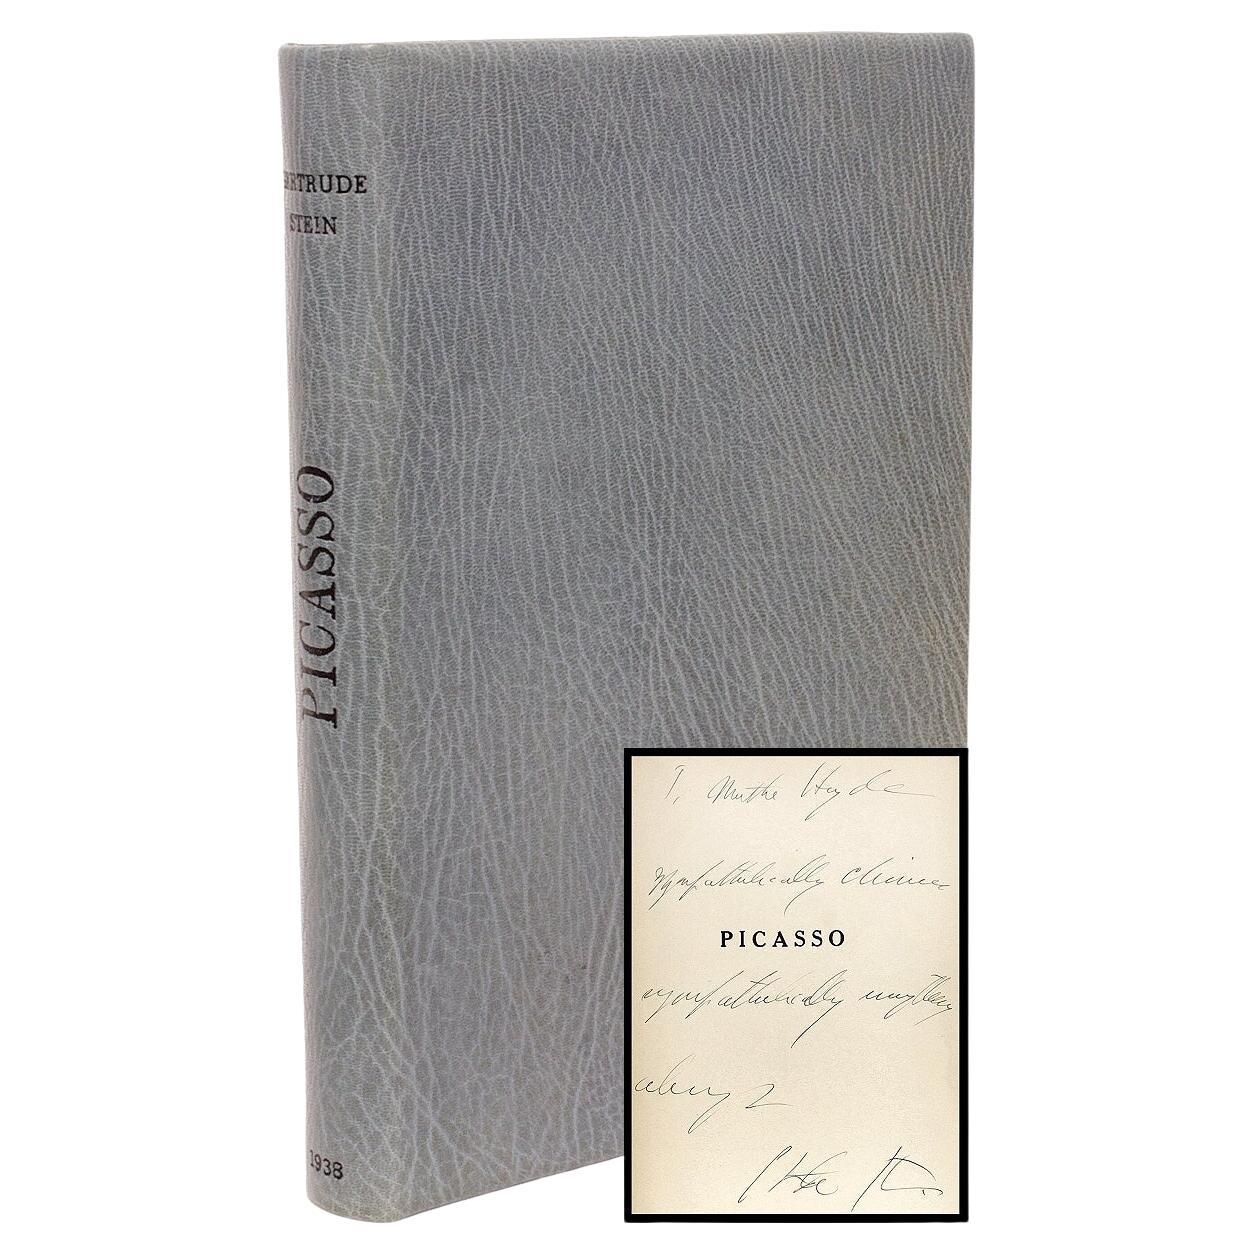 Gertrude Stein Anciens et Modernes Picasso, Erstausgabe, Präsentationskopie 1938